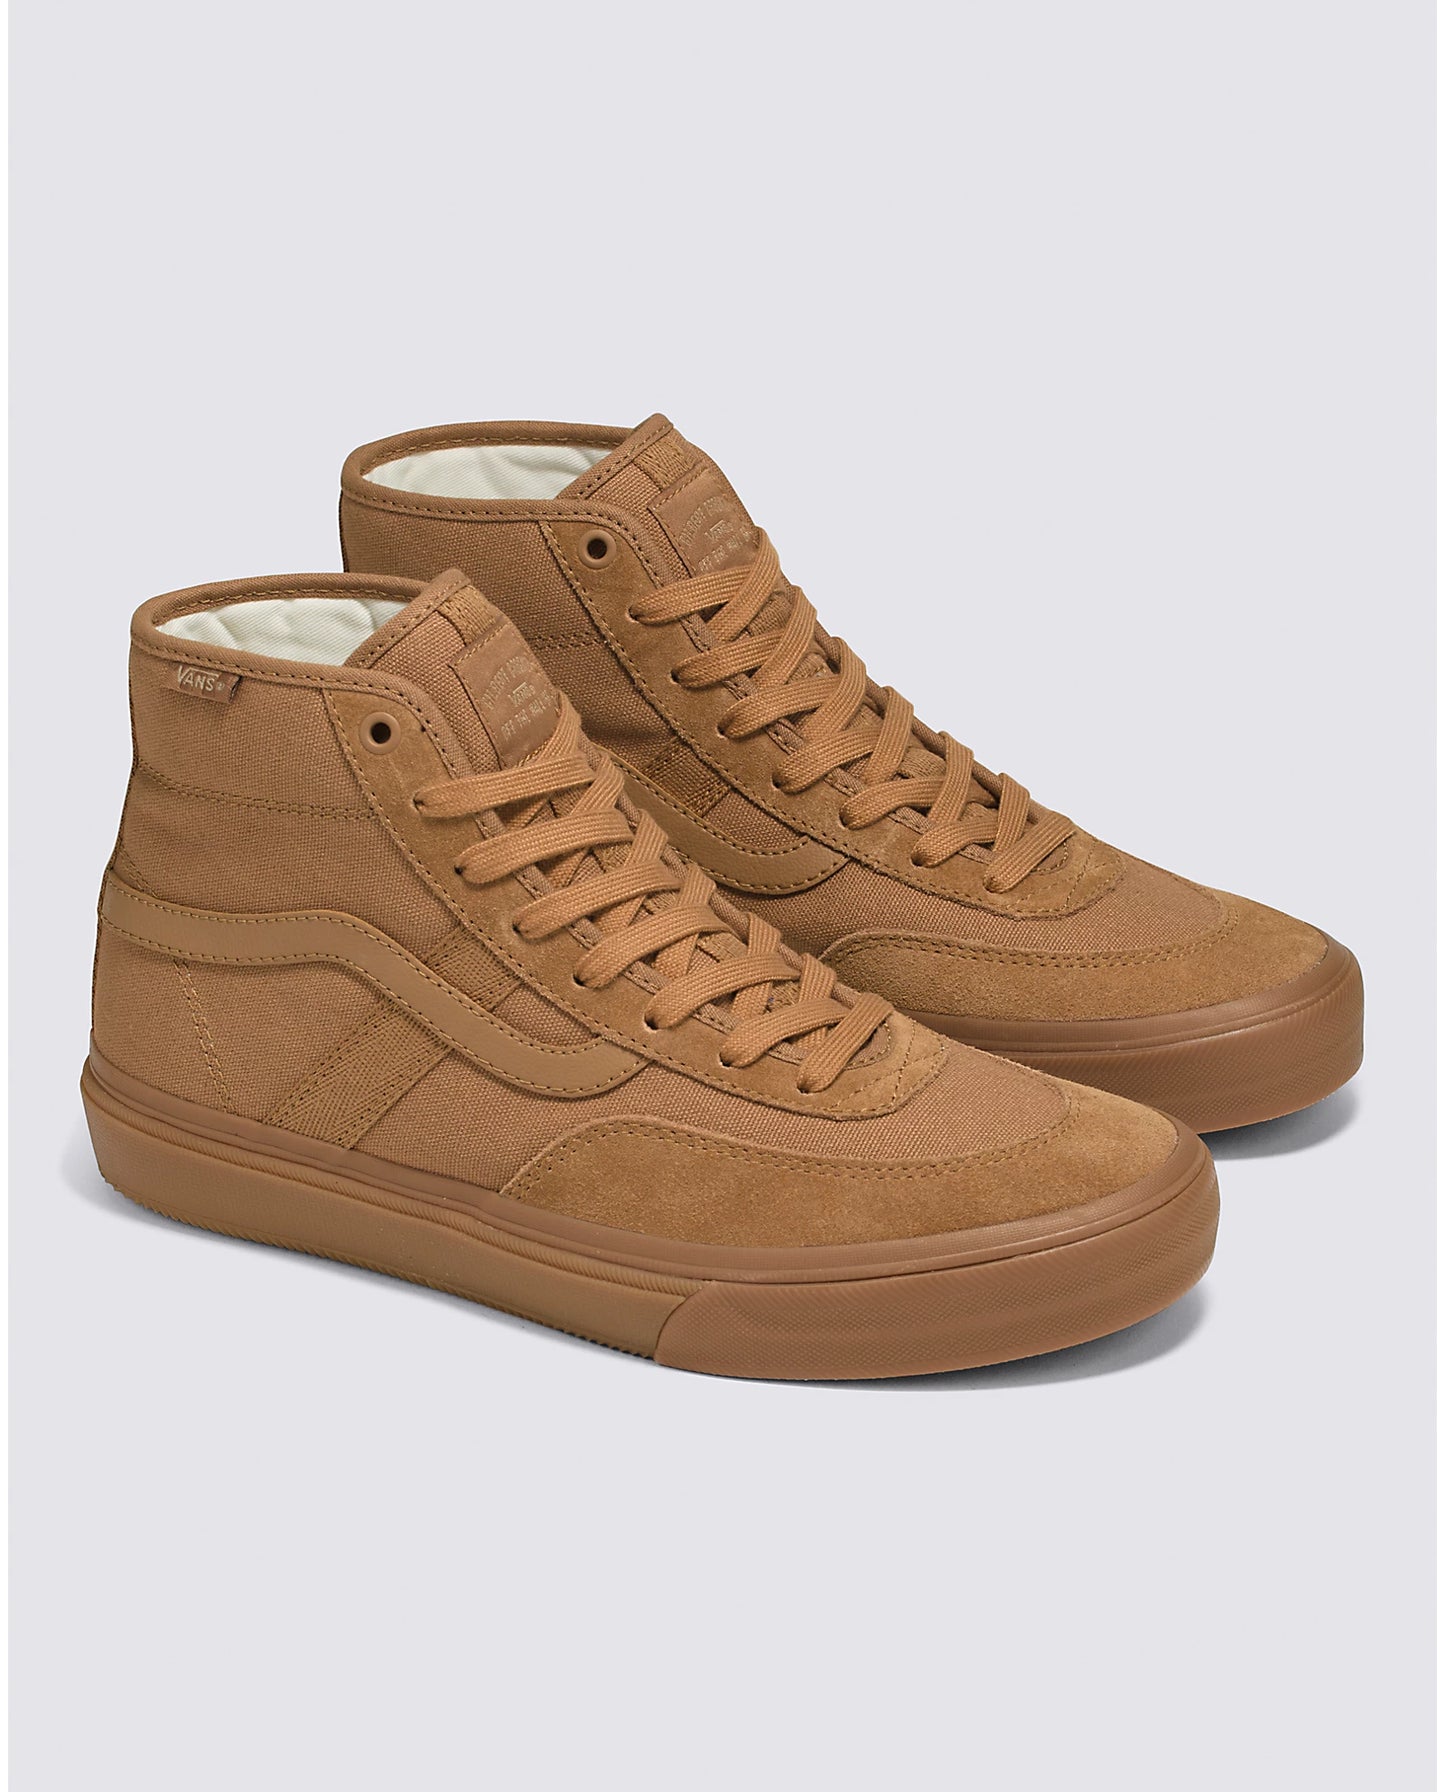 Crockett High Pro Shoe  Brwn/Gum (size options listed)